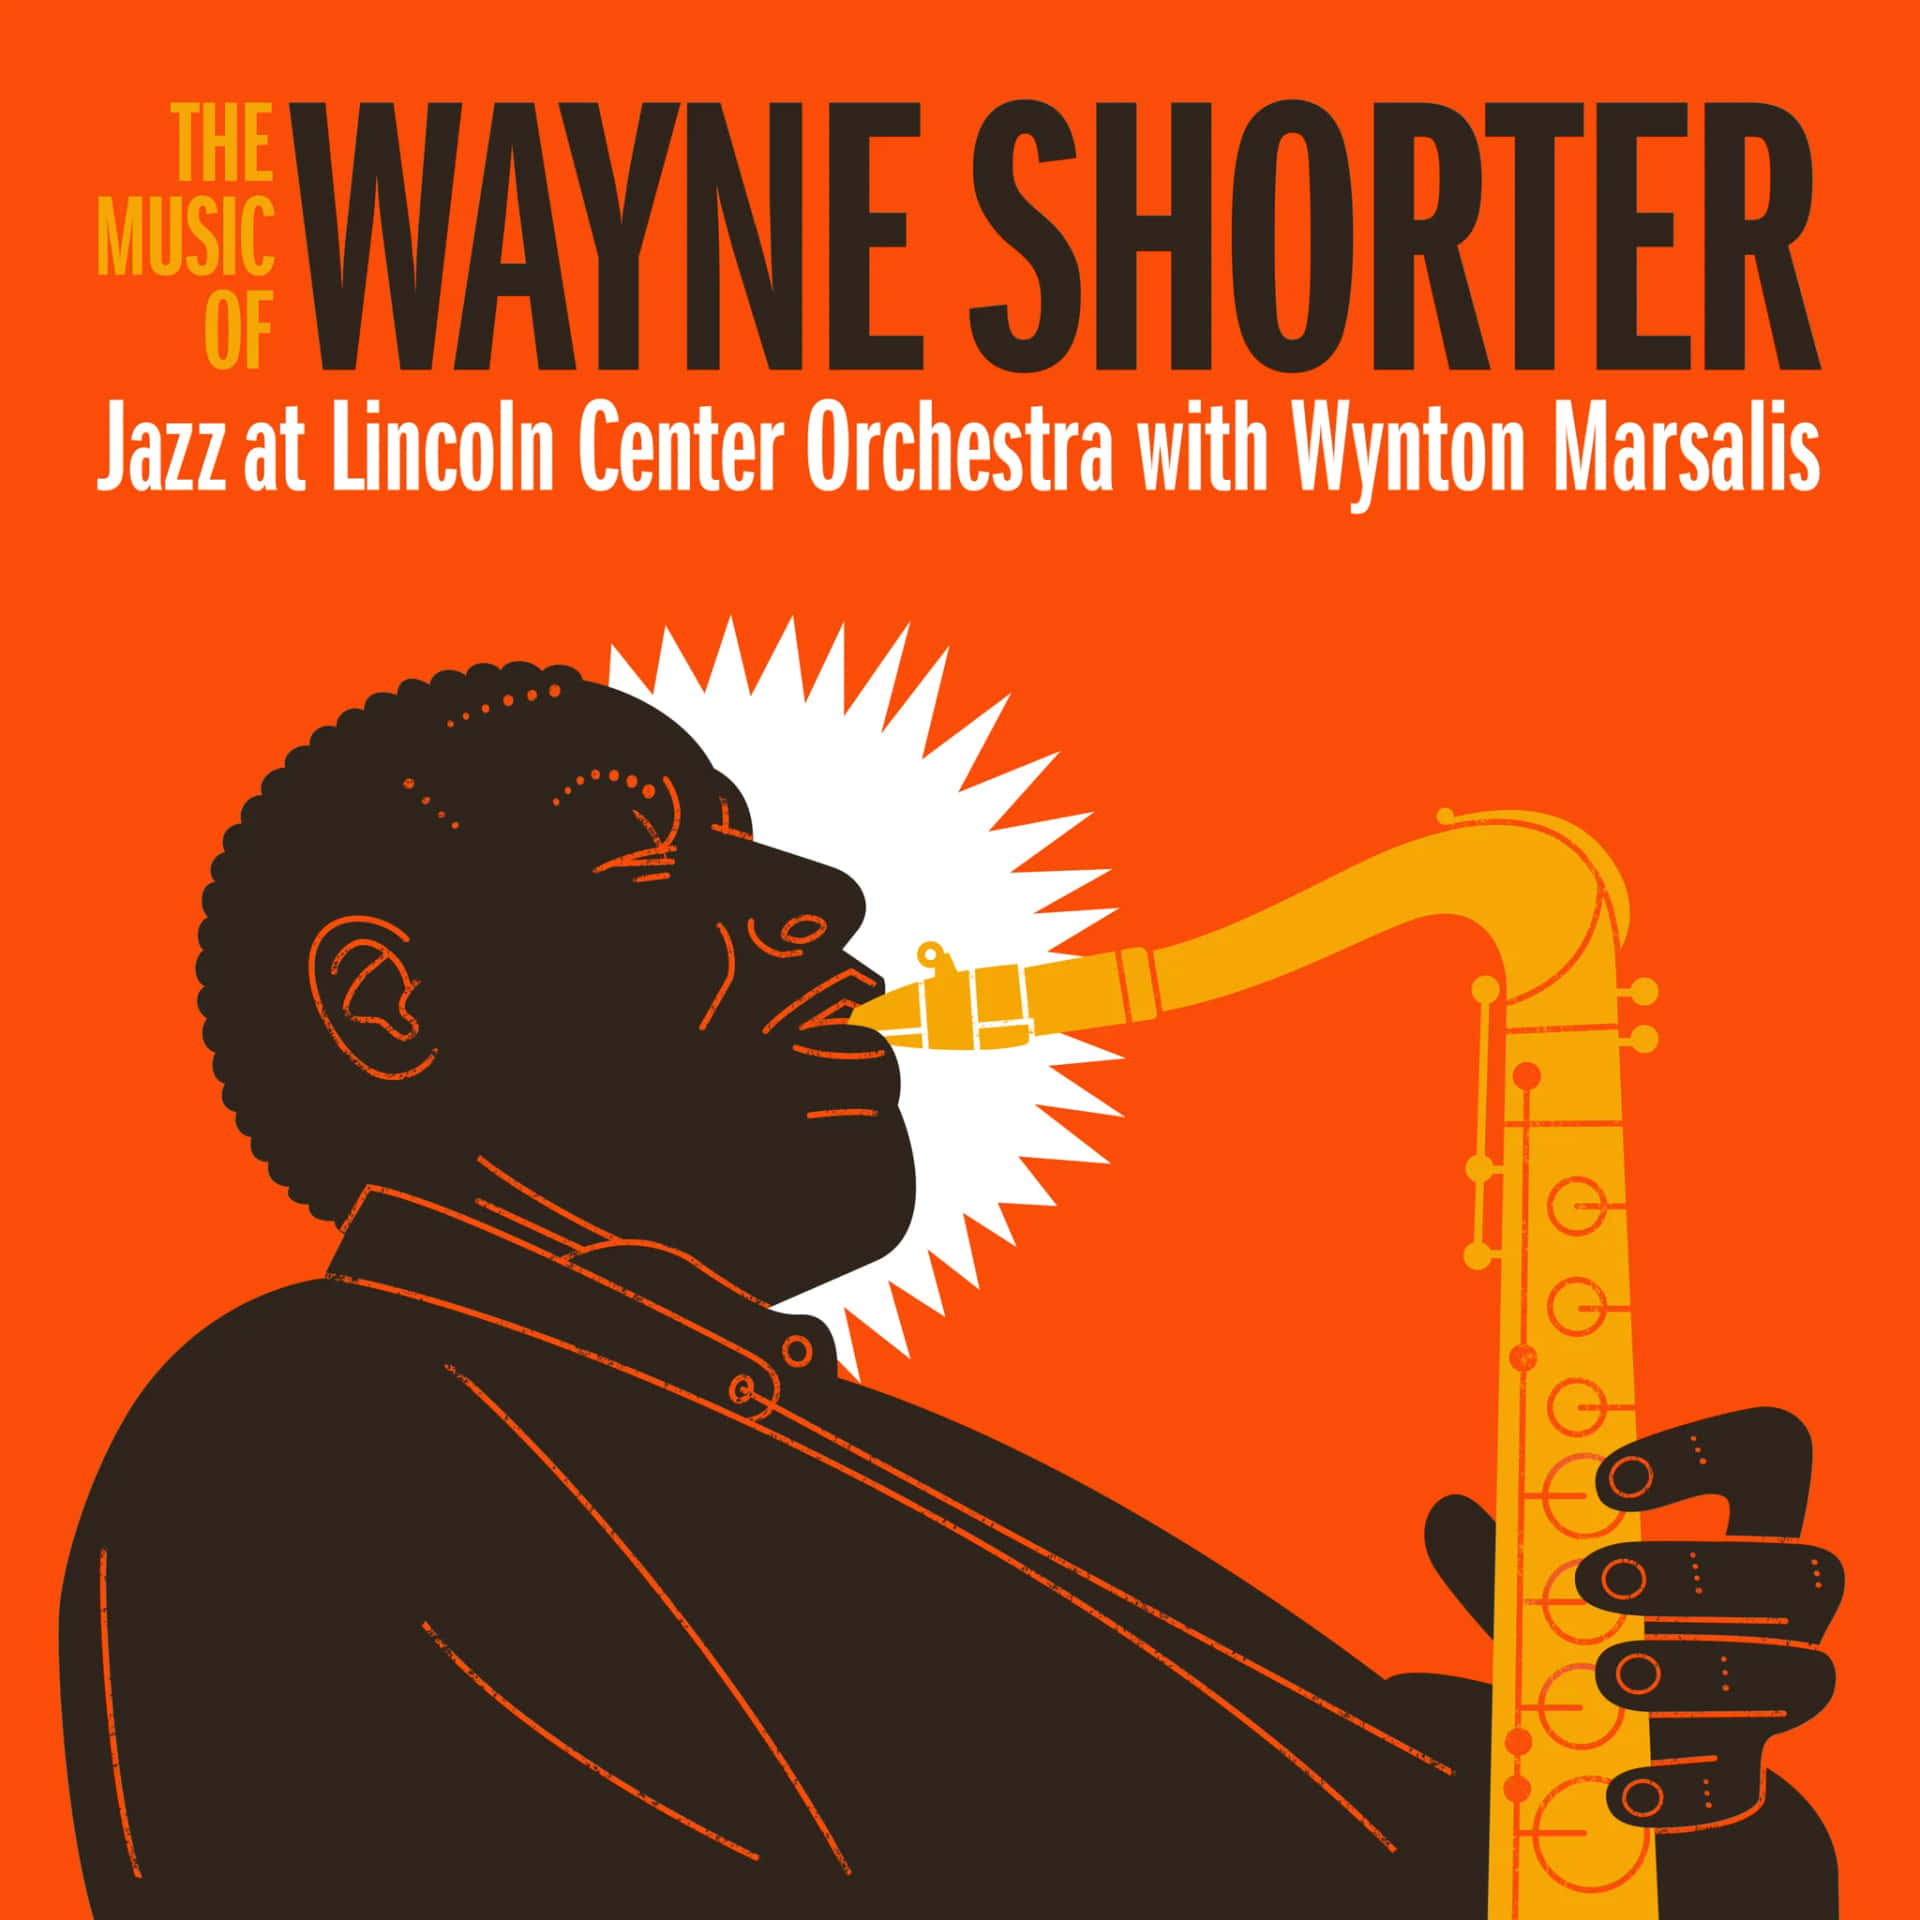 Ellegendario Saxofonista De Jazz Wayne Shorter Interpretando En El Escenario Fondo de pantalla